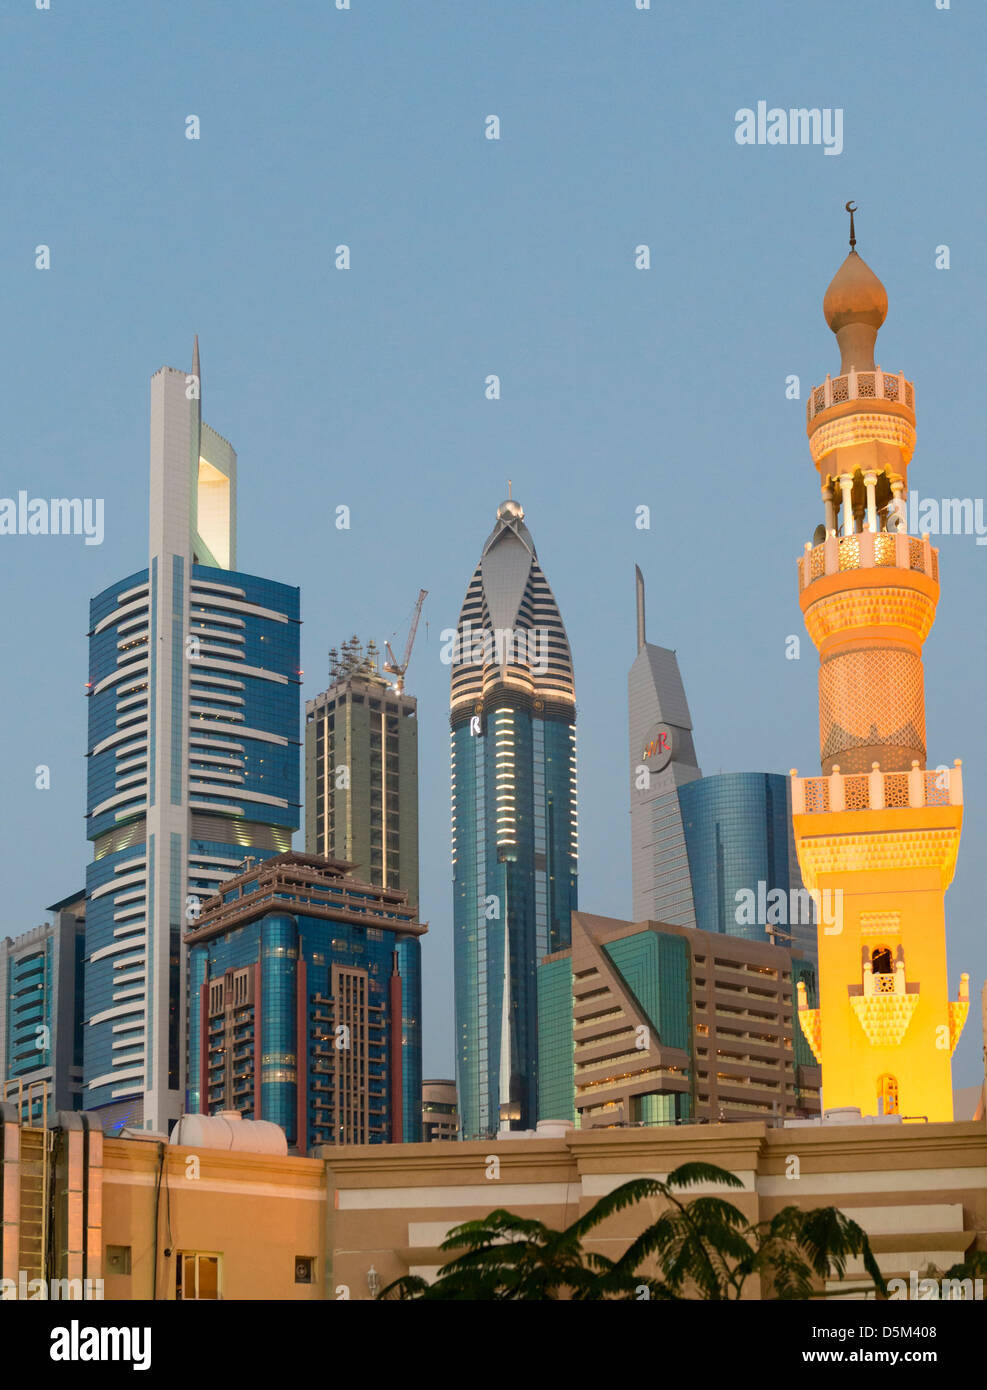 Mosque minaret and skyline of skyscrapers in Dubai United Arab Emirates UAE Stock Photo